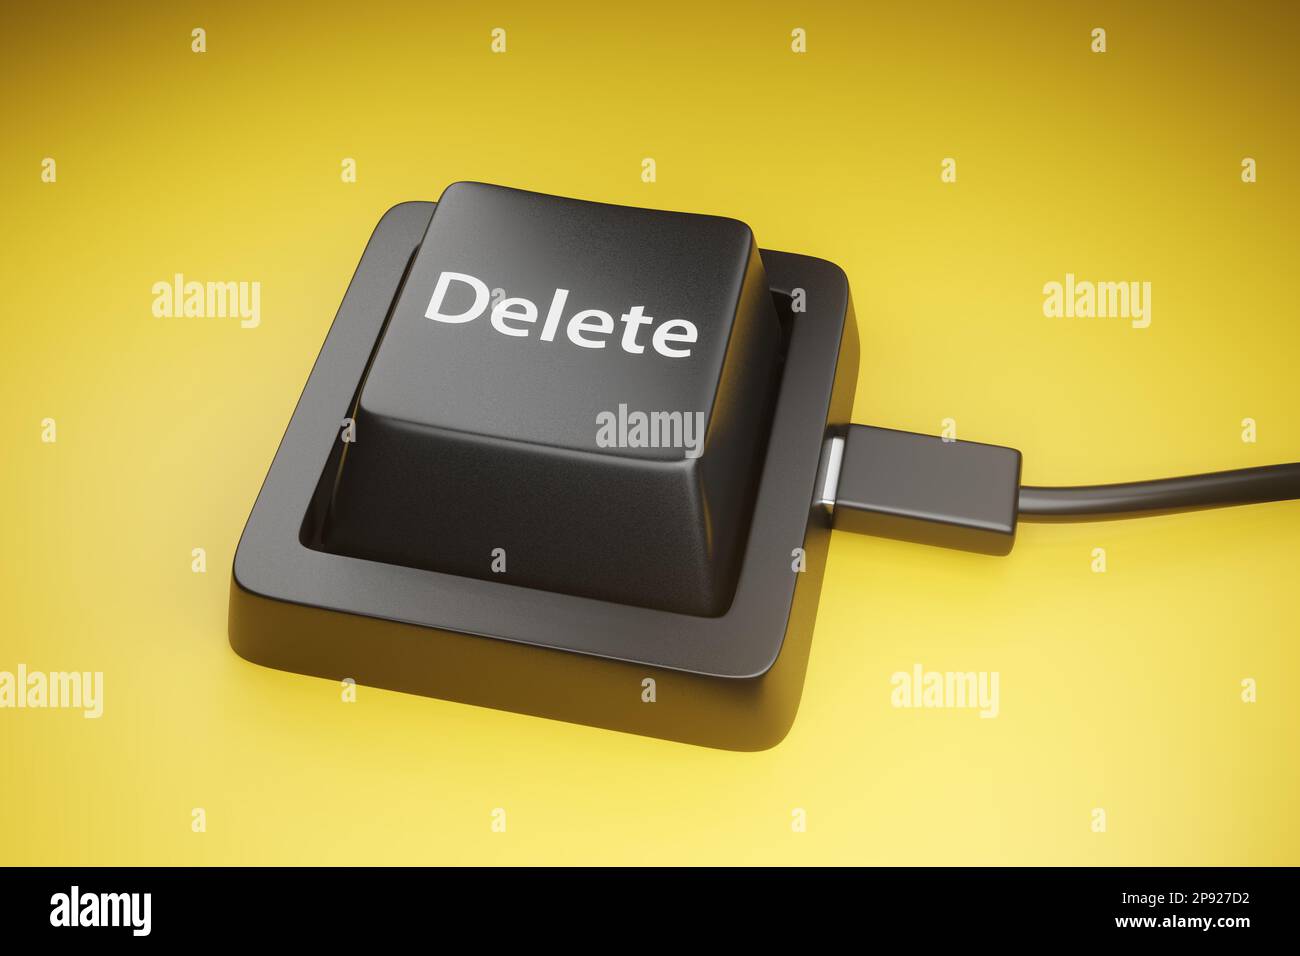 Schwarze Entf-Taste einer Tastatur auf gelbem Hintergrund. Veranschaulichung des Konzepts der Entfernung und Zerstörung Stockfoto